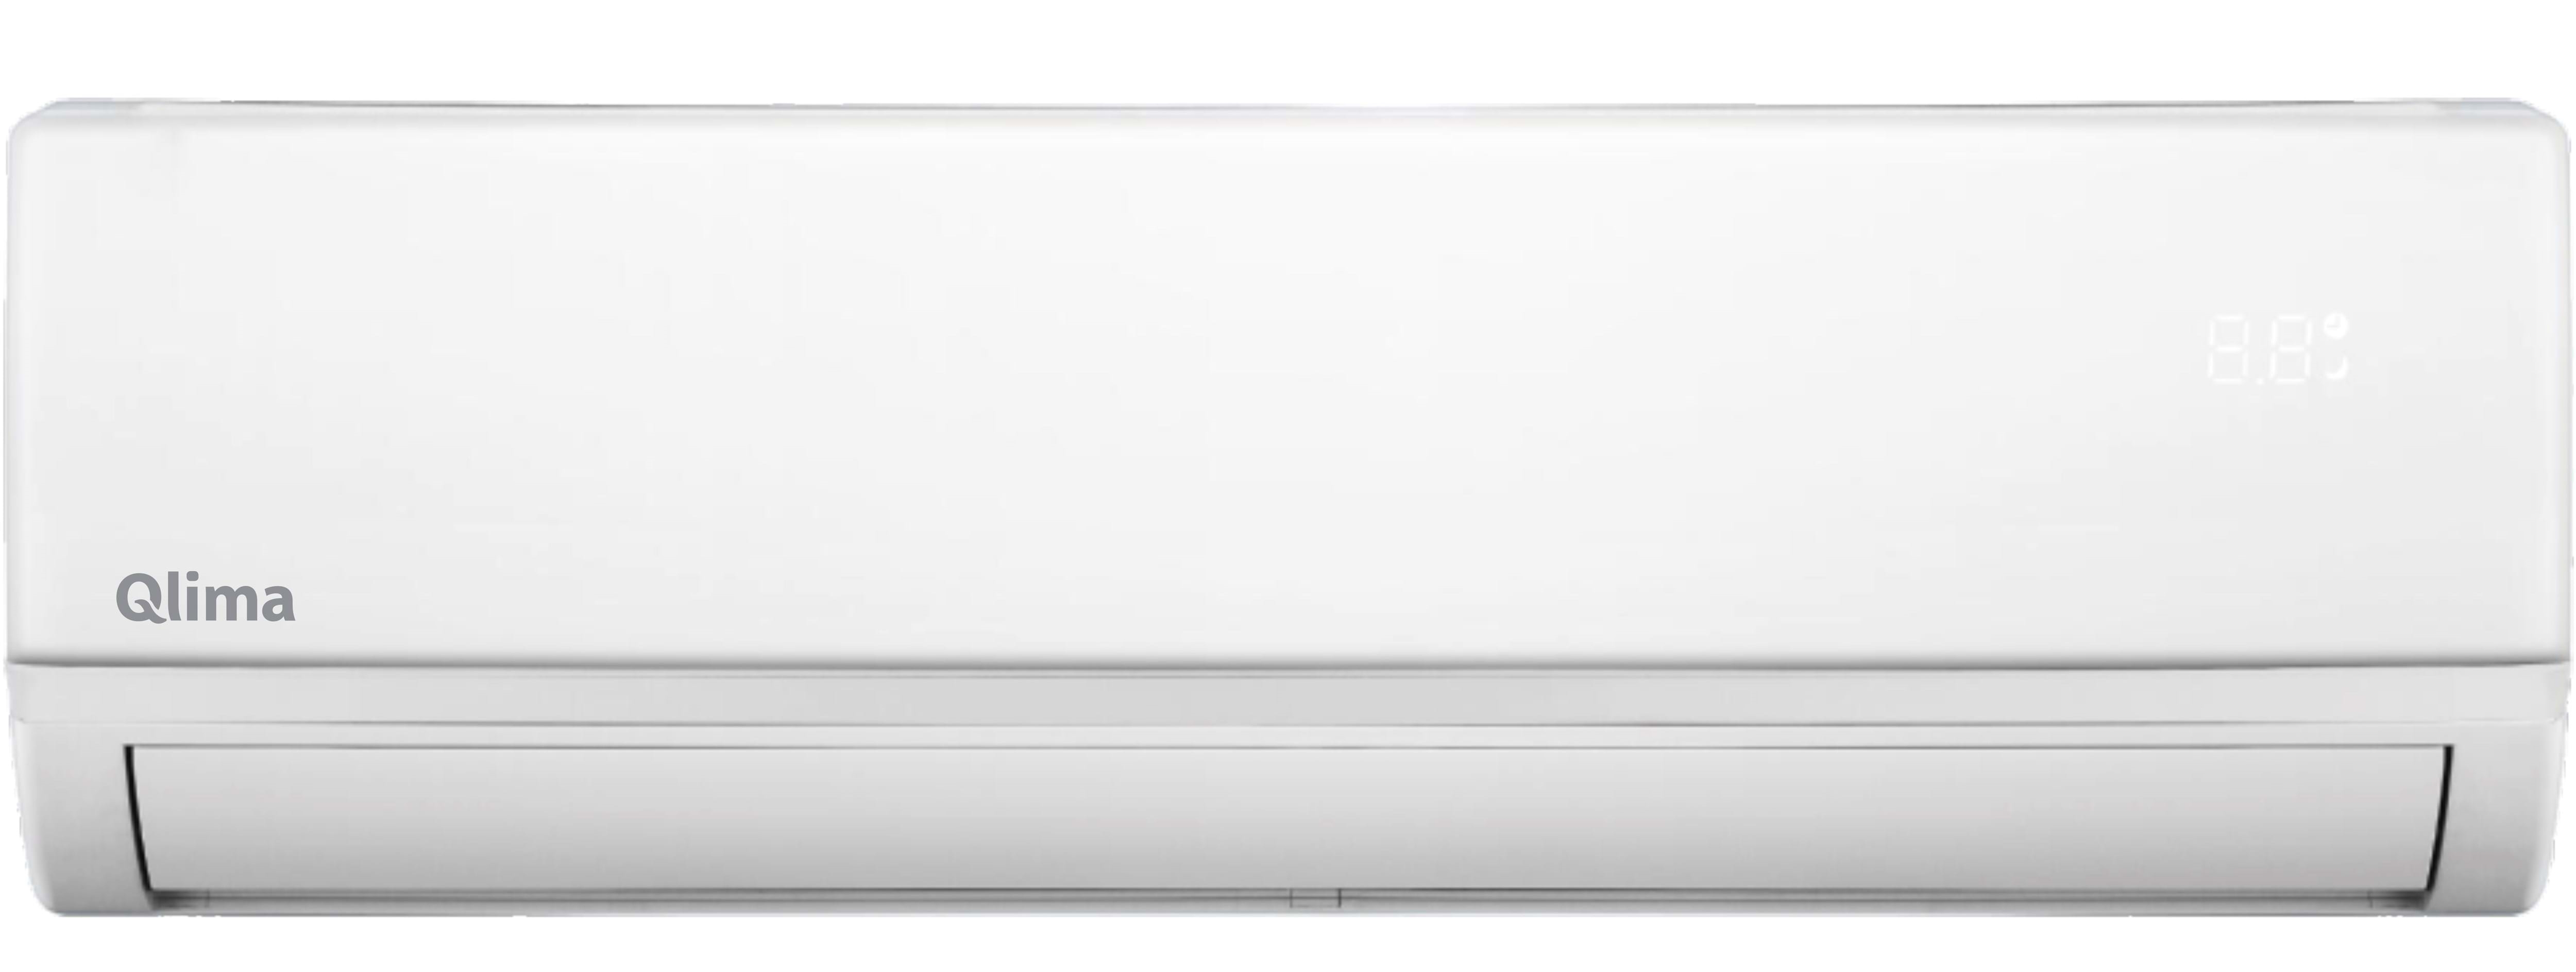 Condizionatore fisso Qlima S3932 unità interna Bianco [S3932IN]